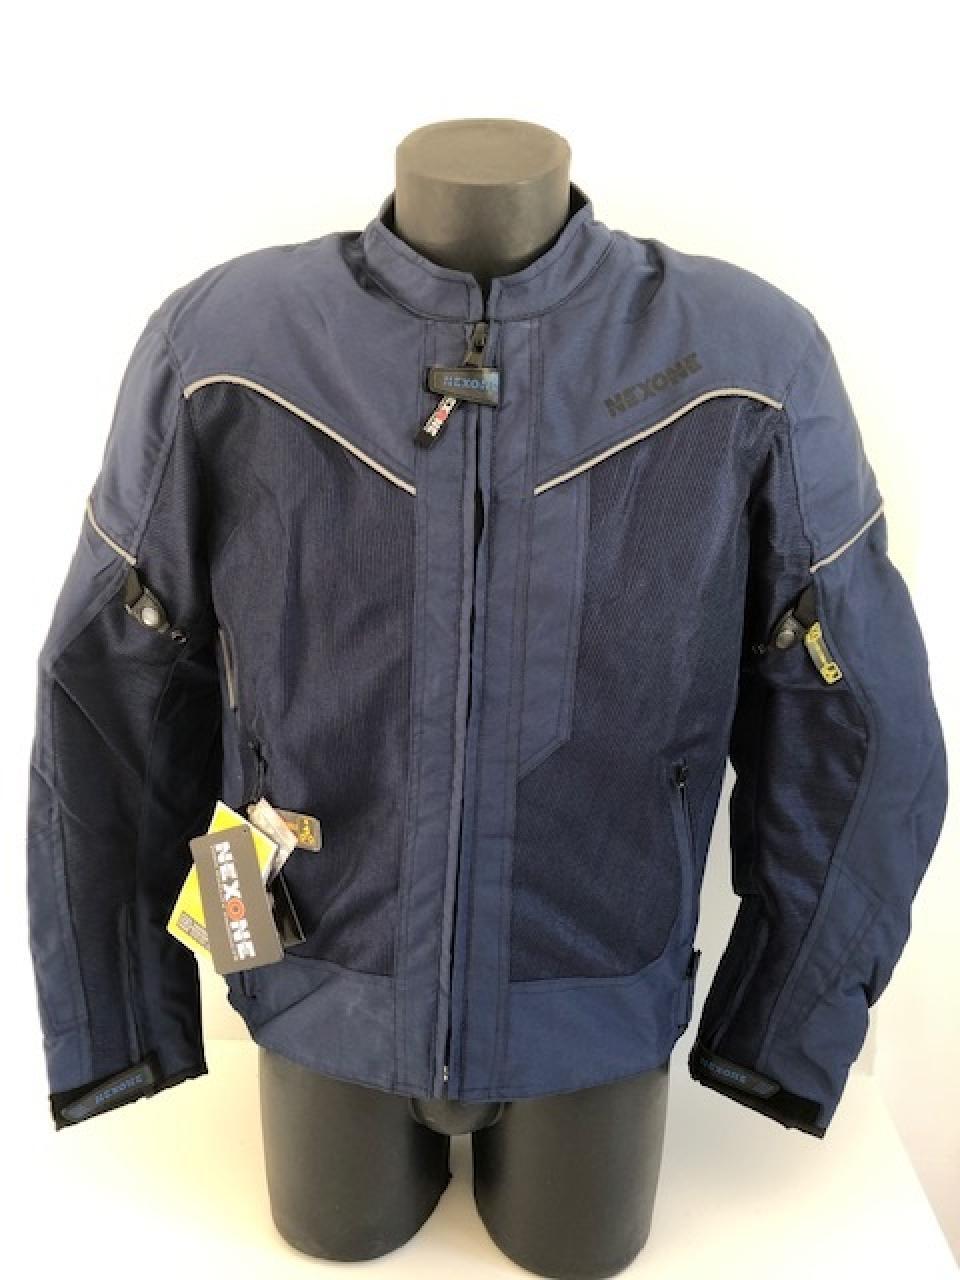 Blouson veste pour moto Homme Nexone Eté Flavio bleu Textile  Taille M homologué CE